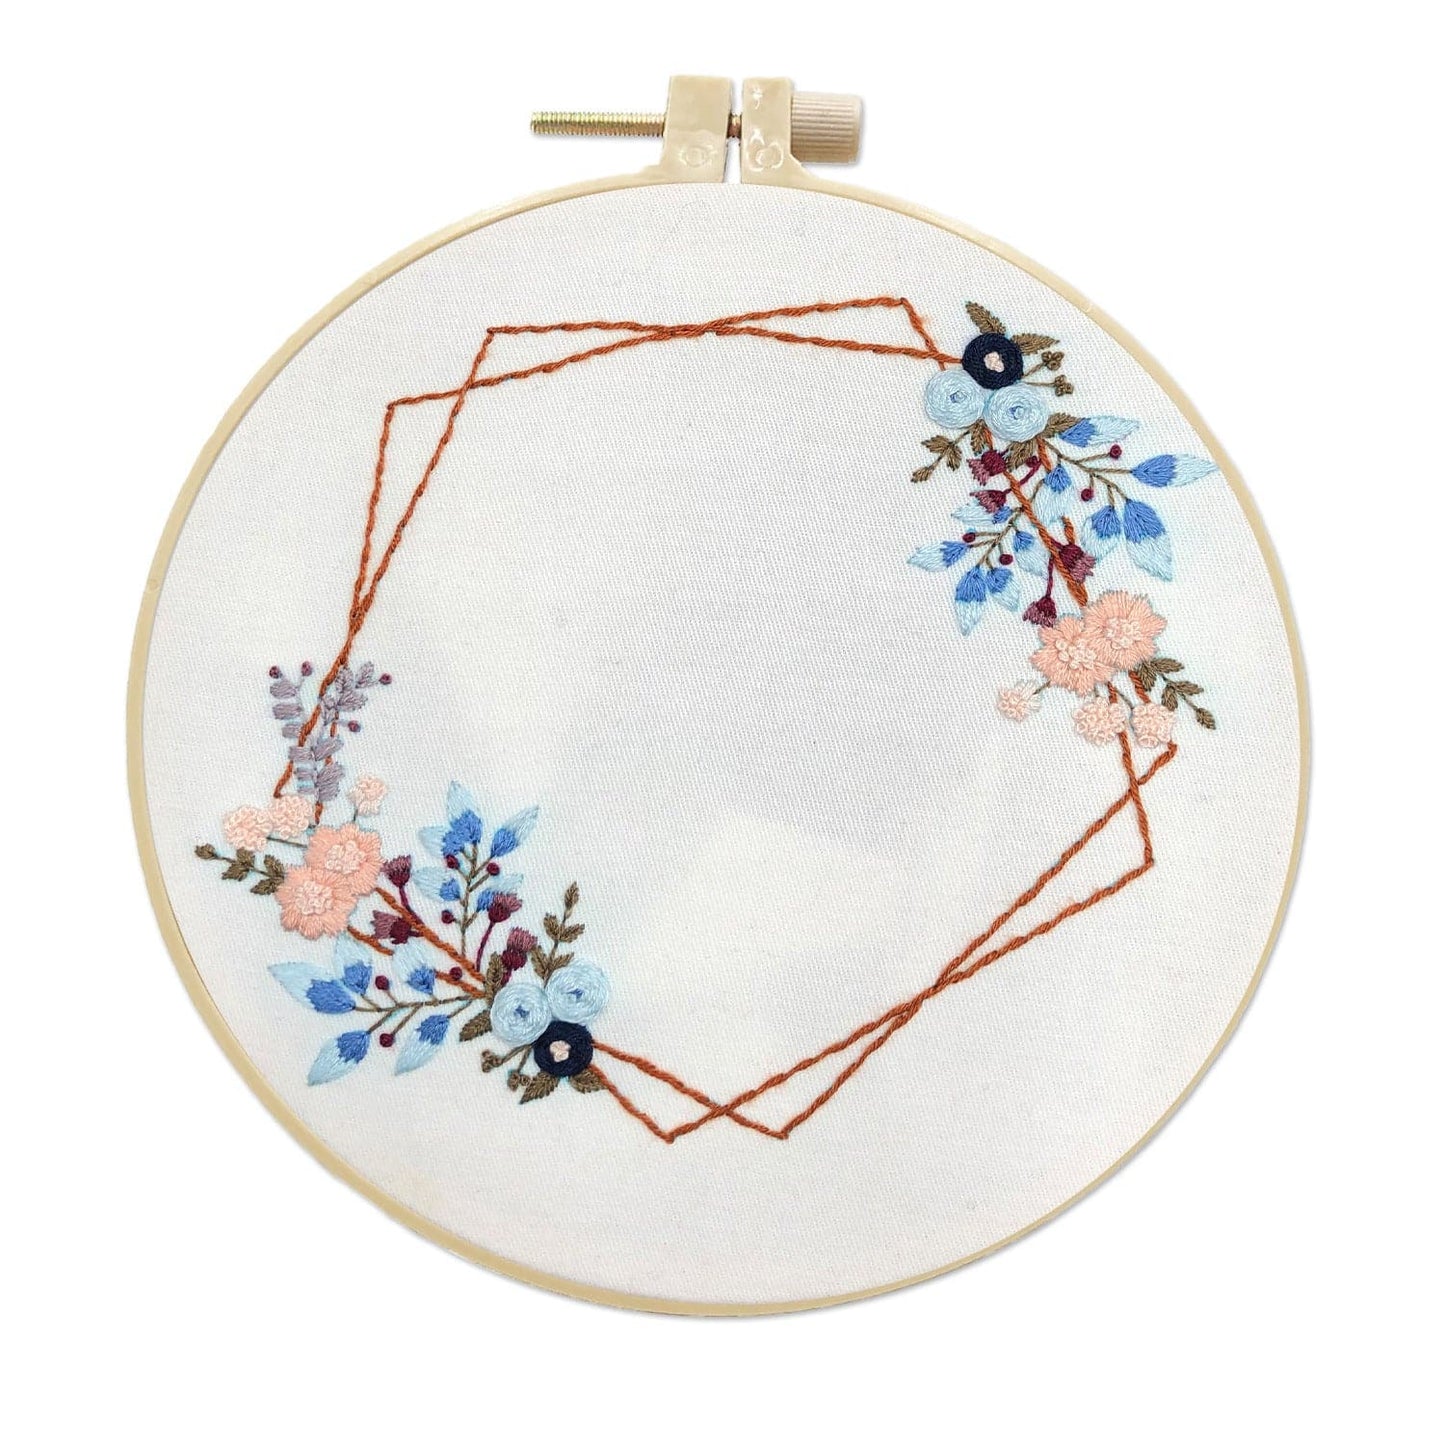 Flowers-Embroidery ktclubs.com